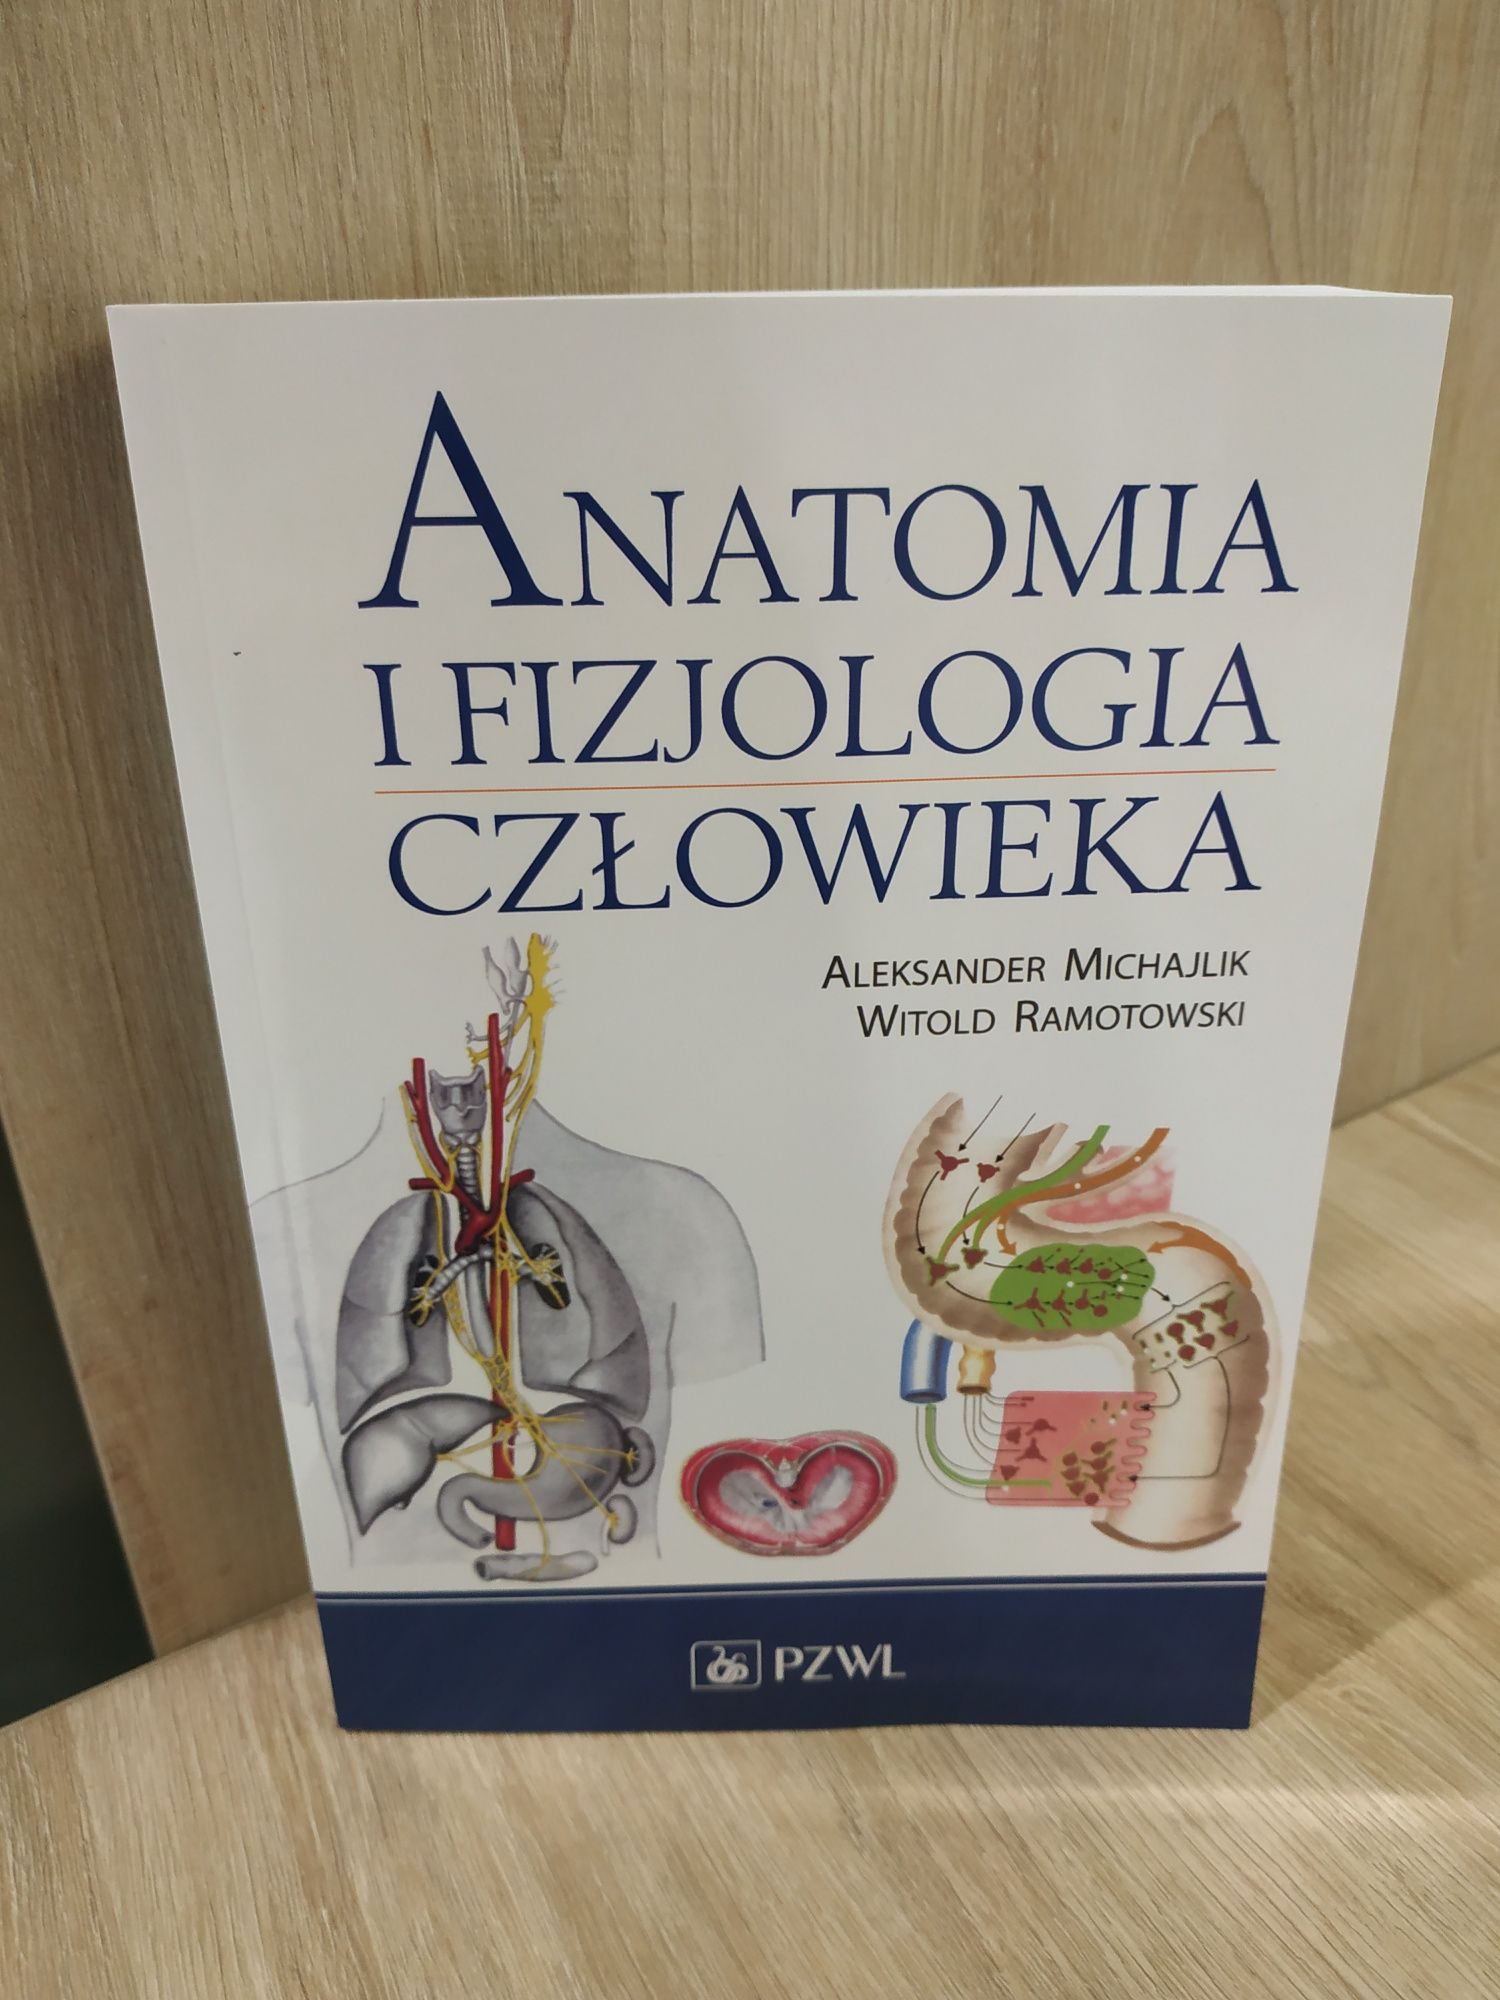 Anatomia i fizjologia człowieka
Anatomia i fizjologia człowieka
Anatom